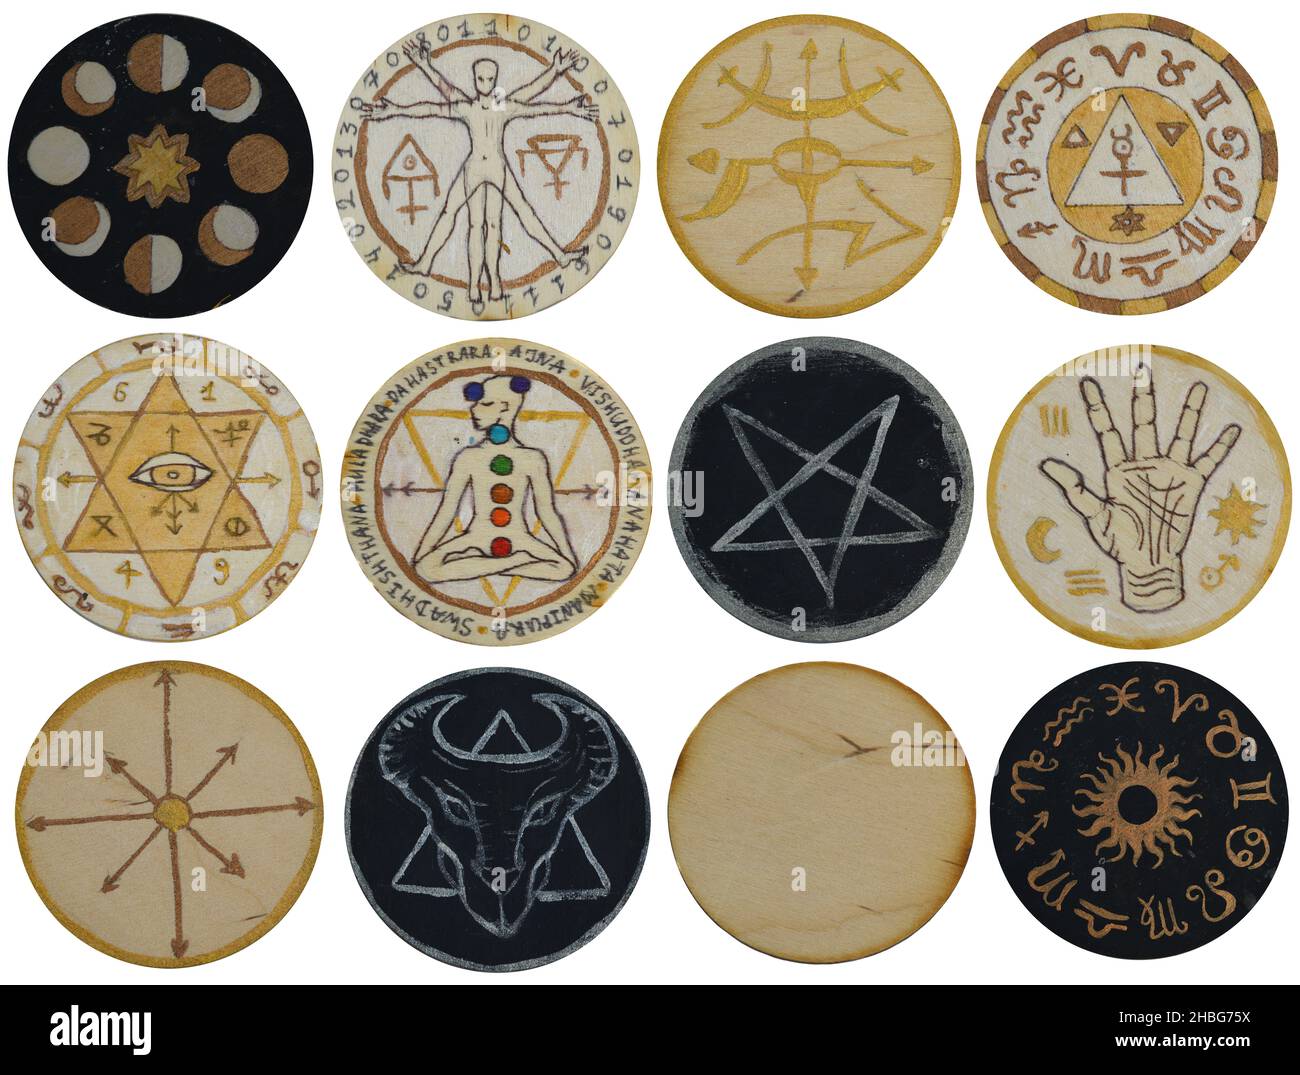  Wiccan - Juego de sellos de cera, pentagrama pagano, fases  lunares, cabeza de sello de sellado de fases lunares, diseño vintage de ojo  malvado de triple luna y pentáculo de sol